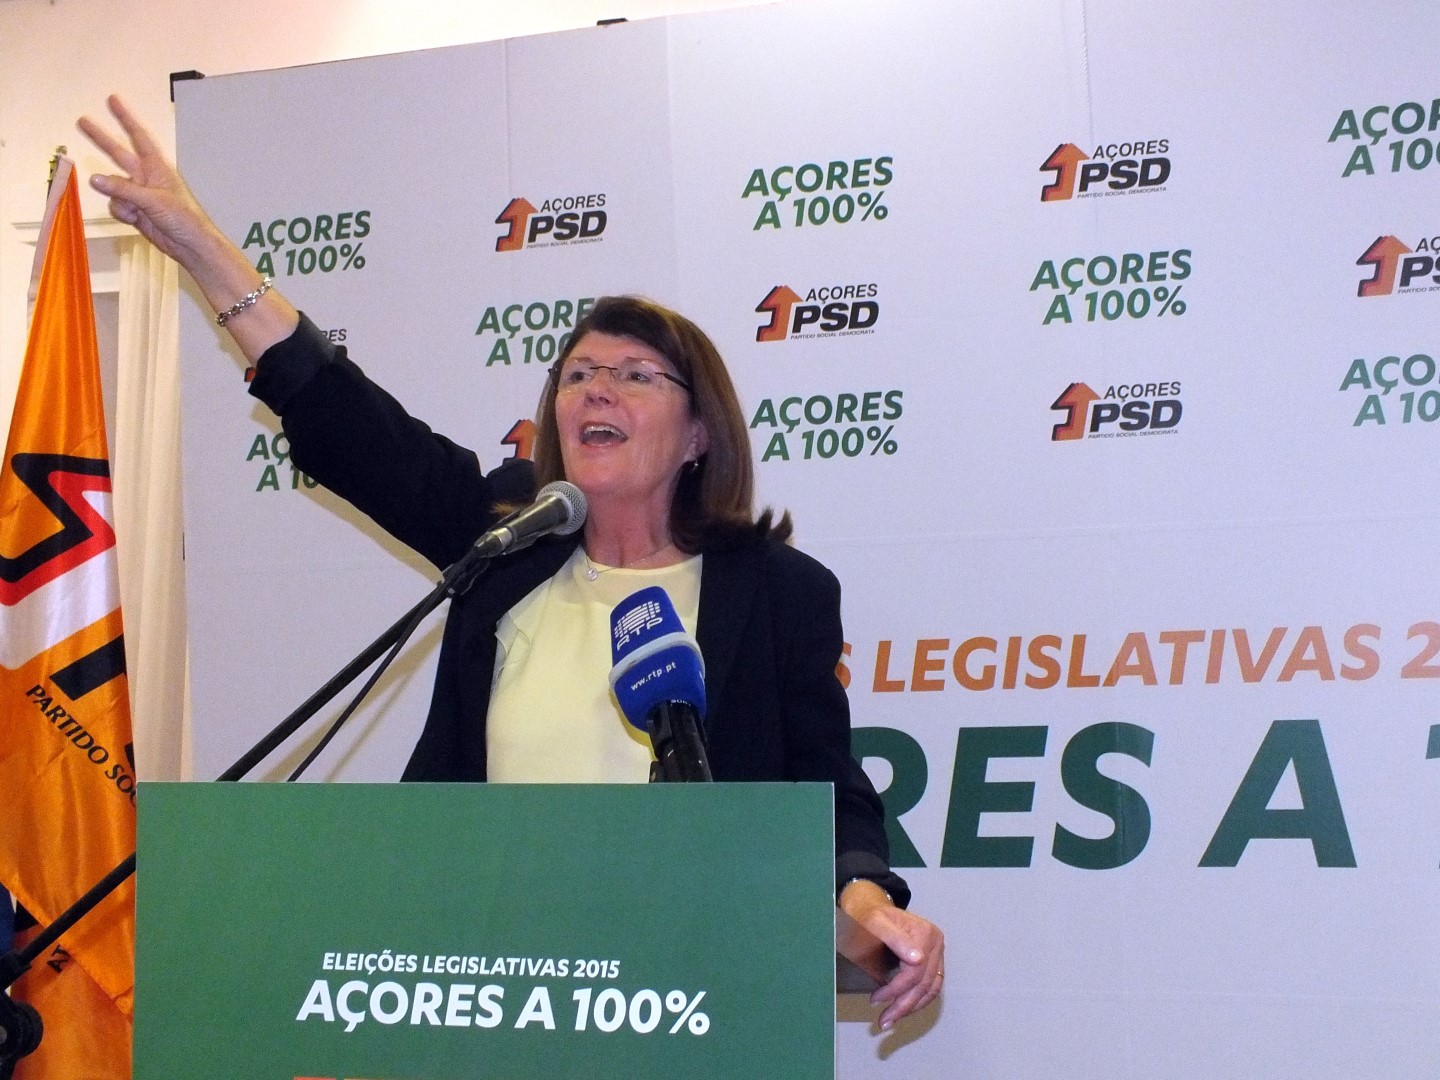 Votar PSD nos Açores é “dar força a Passos Coelho”, afirma Berta Cabral